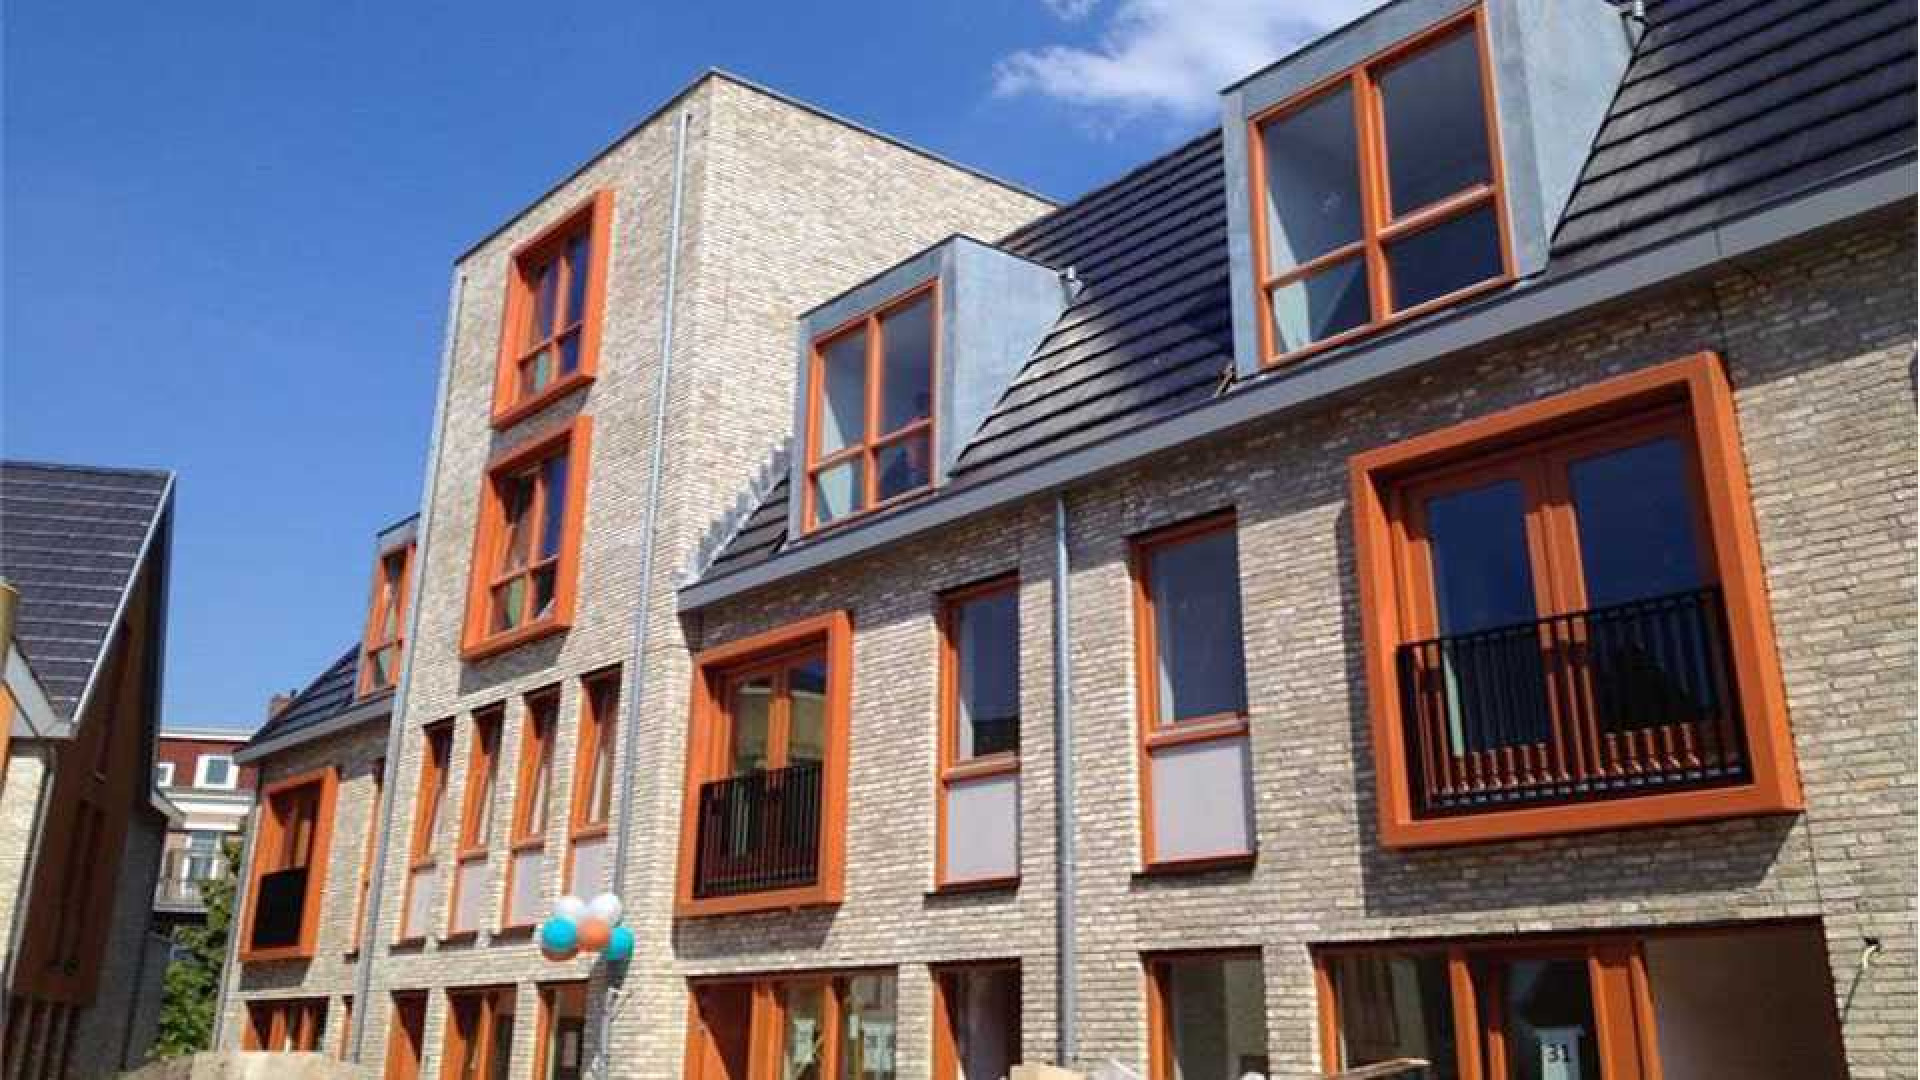 Shownieuws presentator Maurice WIjnen koopt luxe appartement in Weesp. Zie foto's